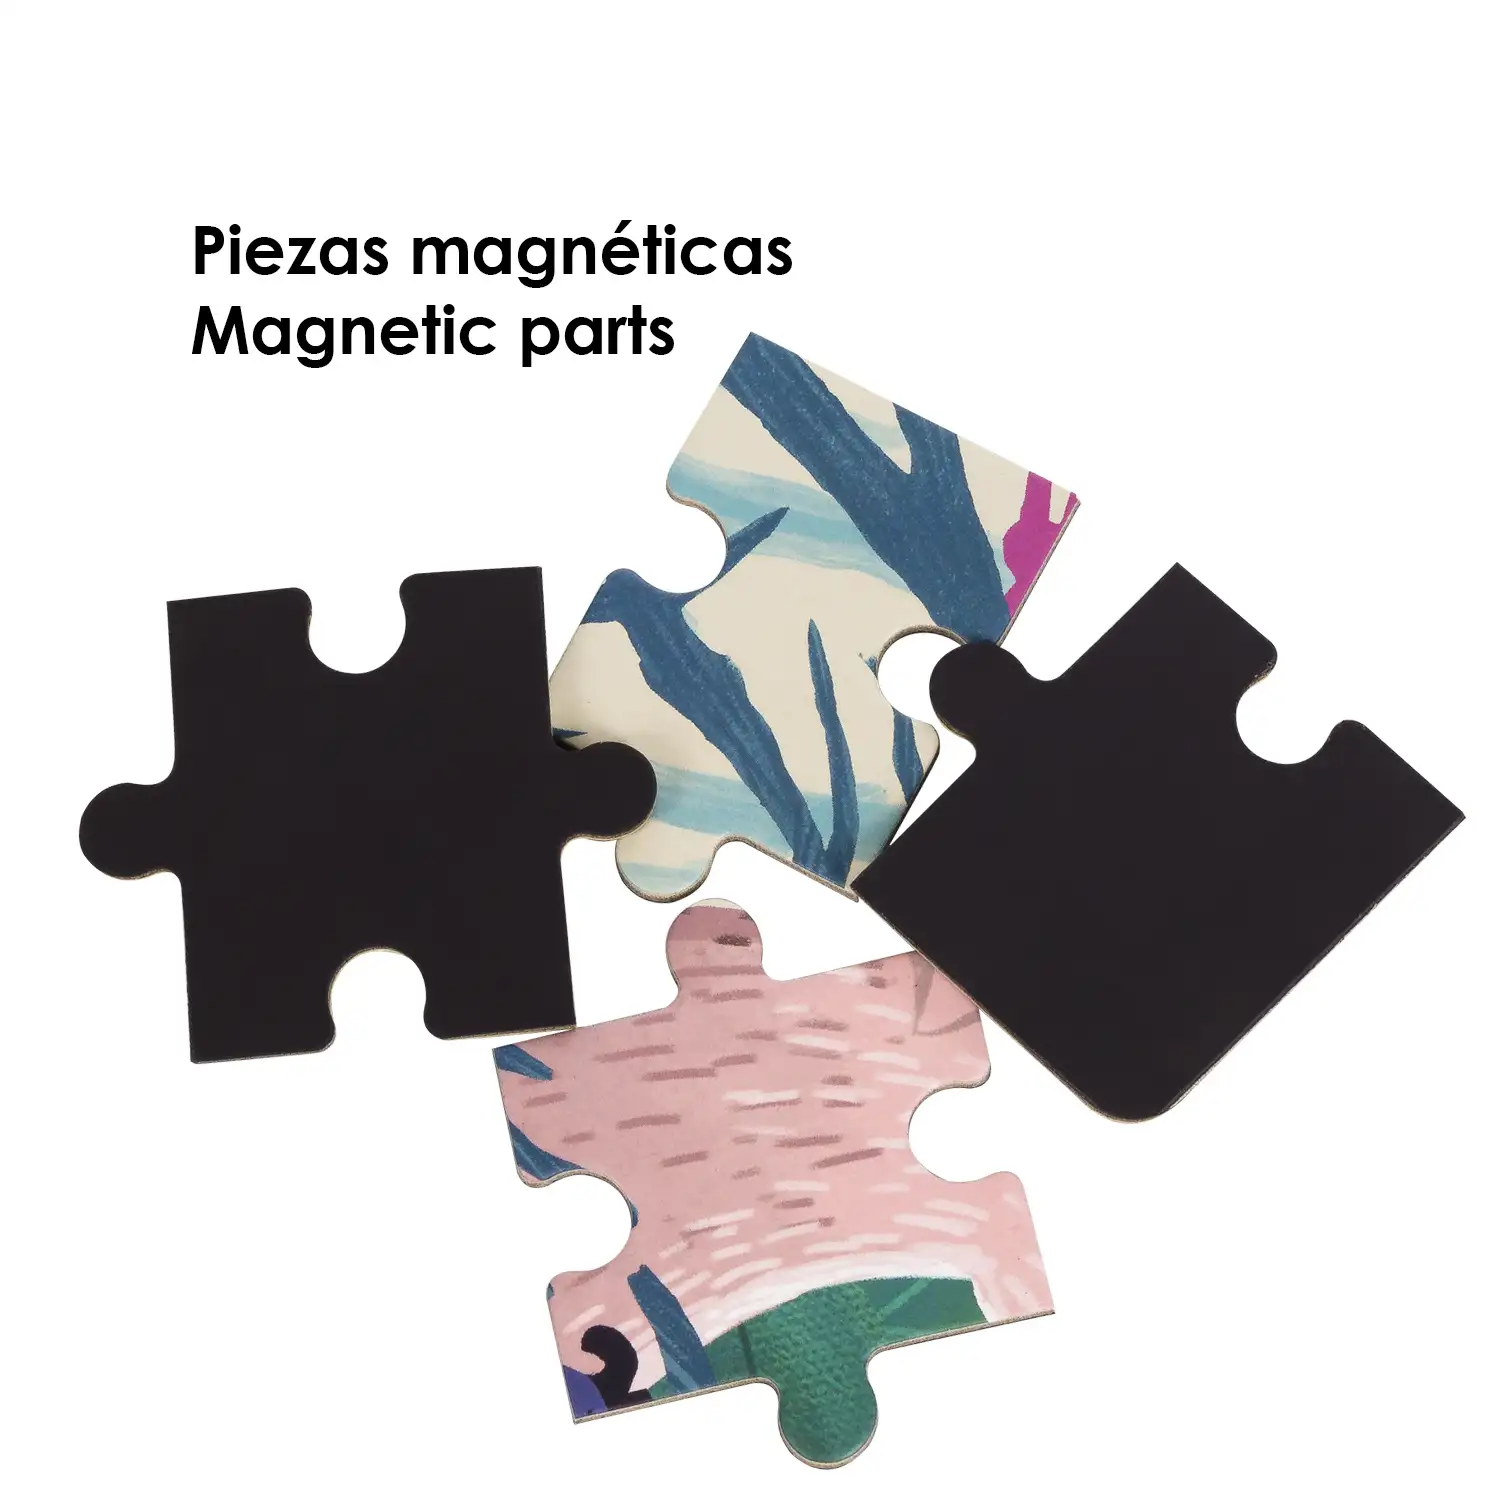 Puzle diseño Mundo Animal de 40 piezas magnético. Formato tipo libro, 2 puzzles de 20 piezas en 1.